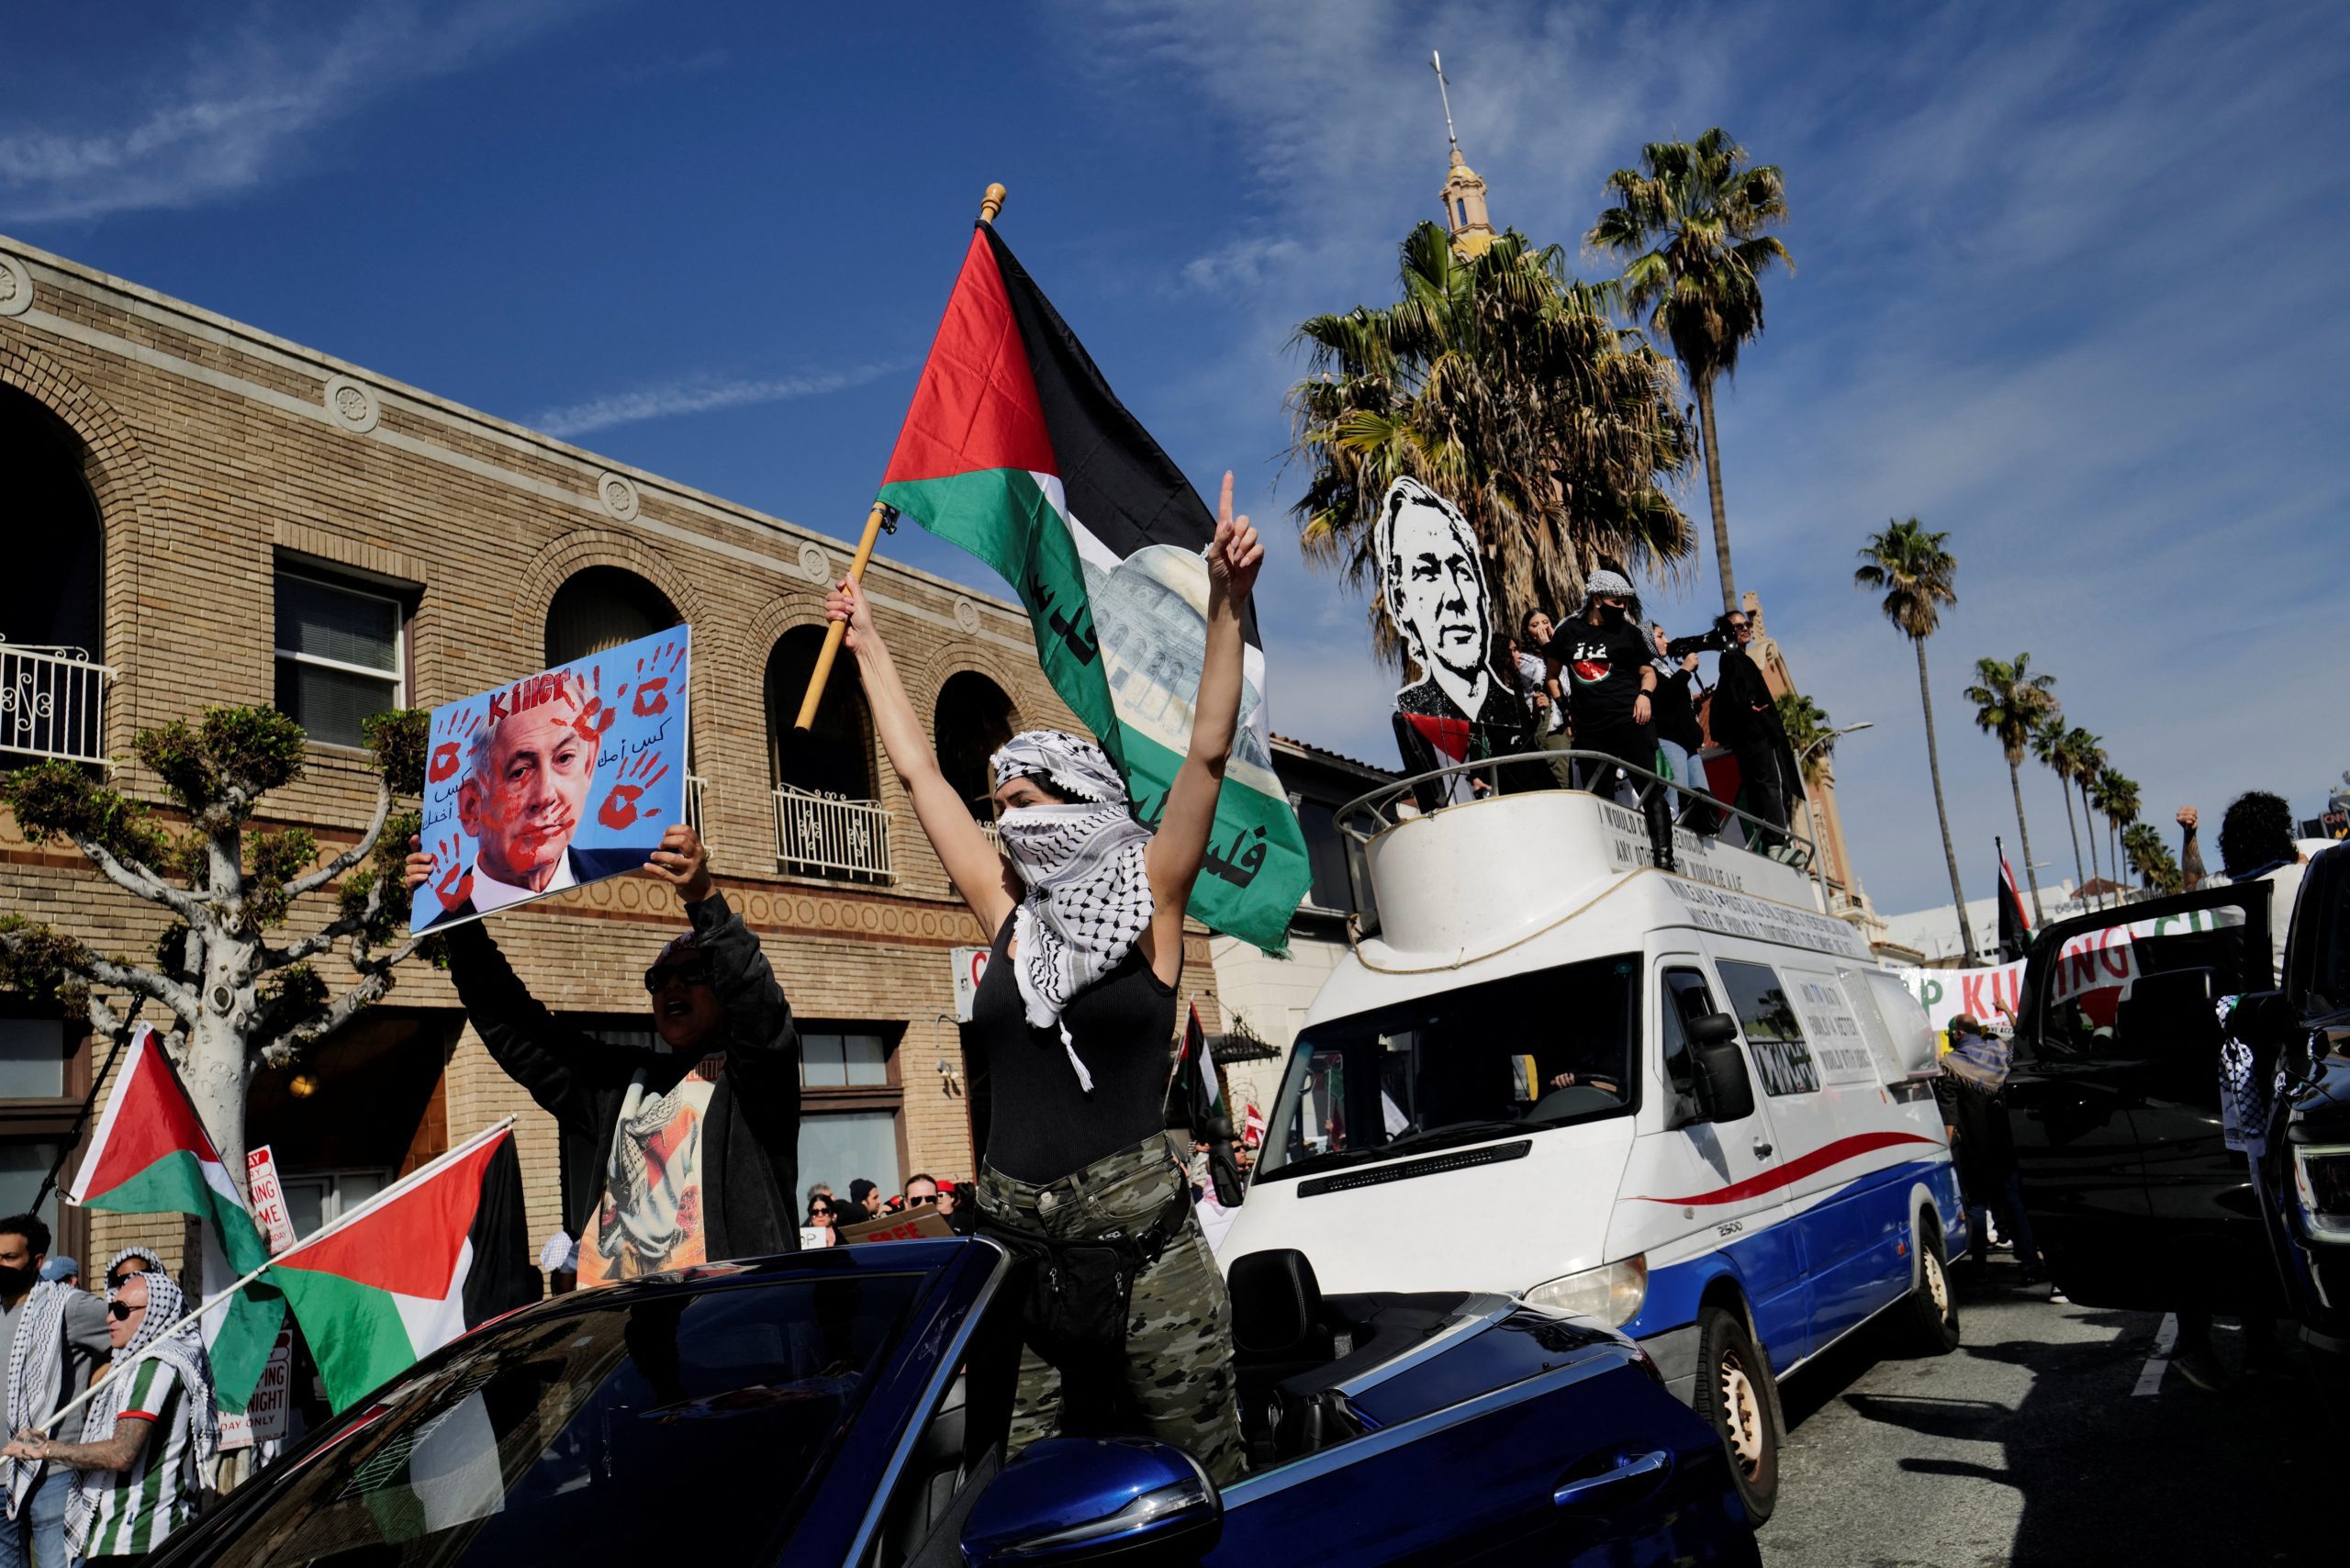 رويترز/ فع المتظاهرون الأعلام الفلسطينية، وهتفوا بالعبارات التضامنية مع فلسطين